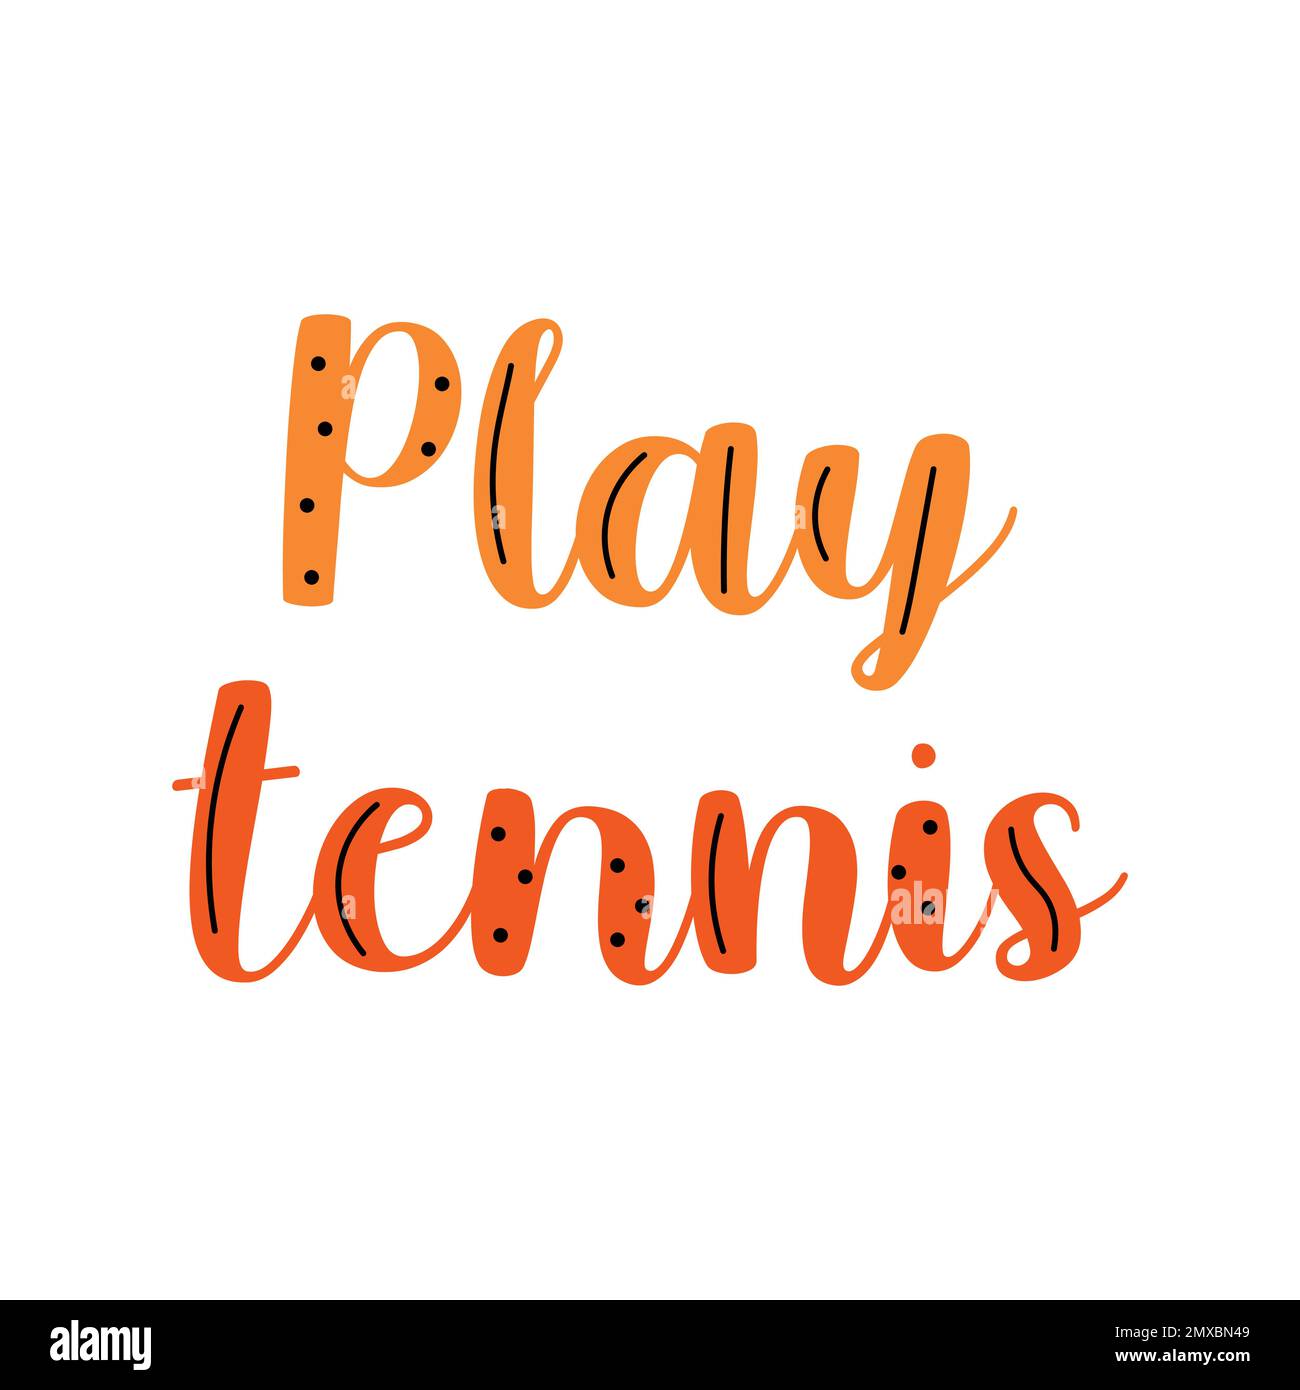 Jouer tennis doodle coloré citation style dessin animé lettrage orange.  Citation motivante d'un tournoi de tennis Image Vectorielle Stock - Alamy